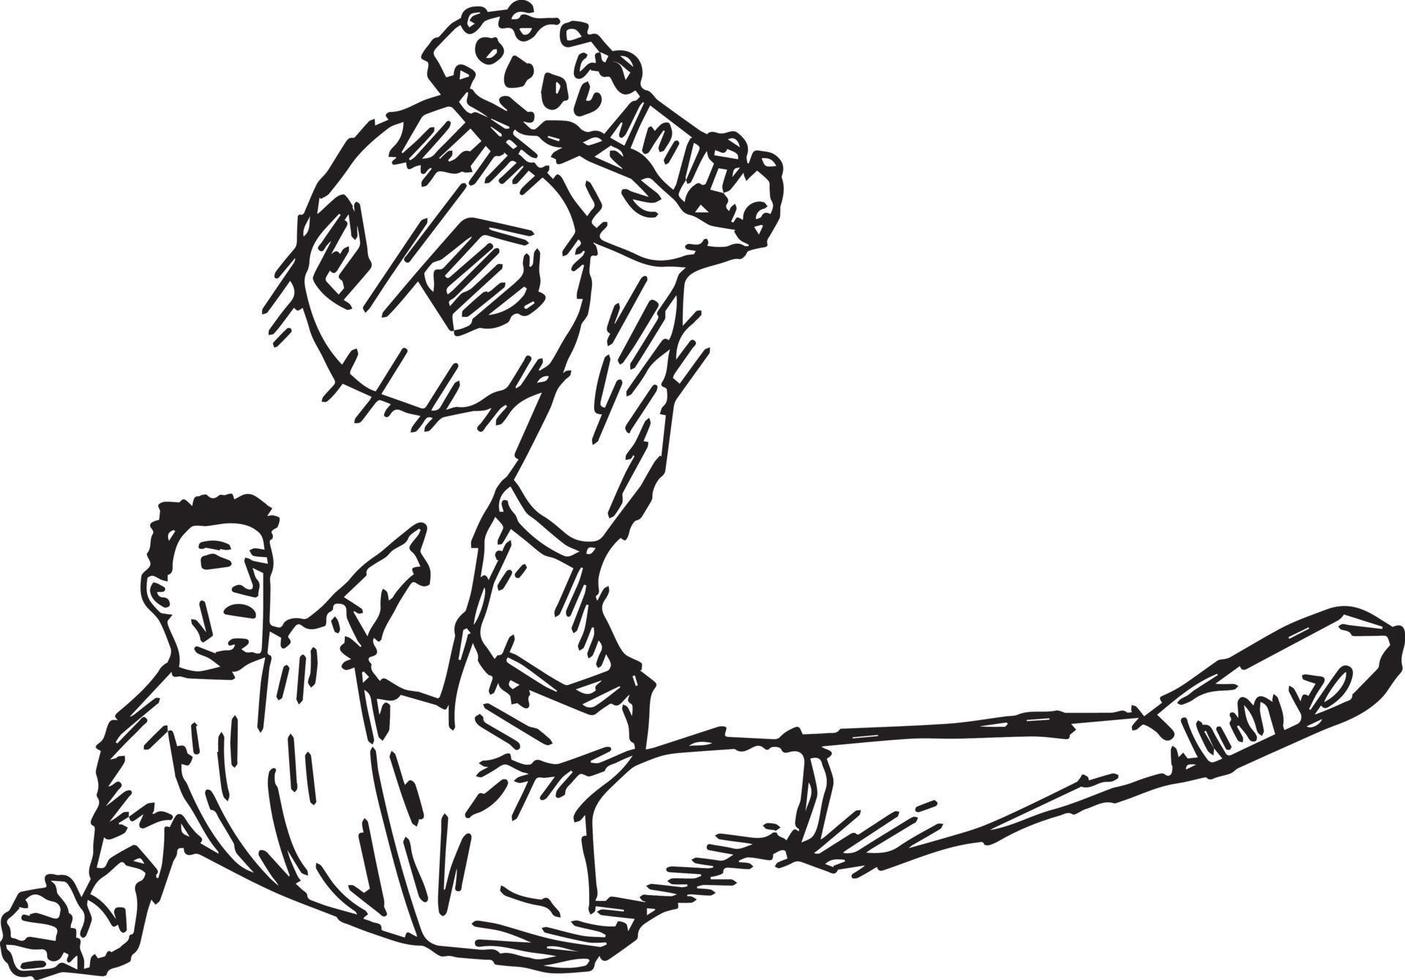 patada de volea de fútbol - dibujo de ilustración vectorial dibujado a mano vector